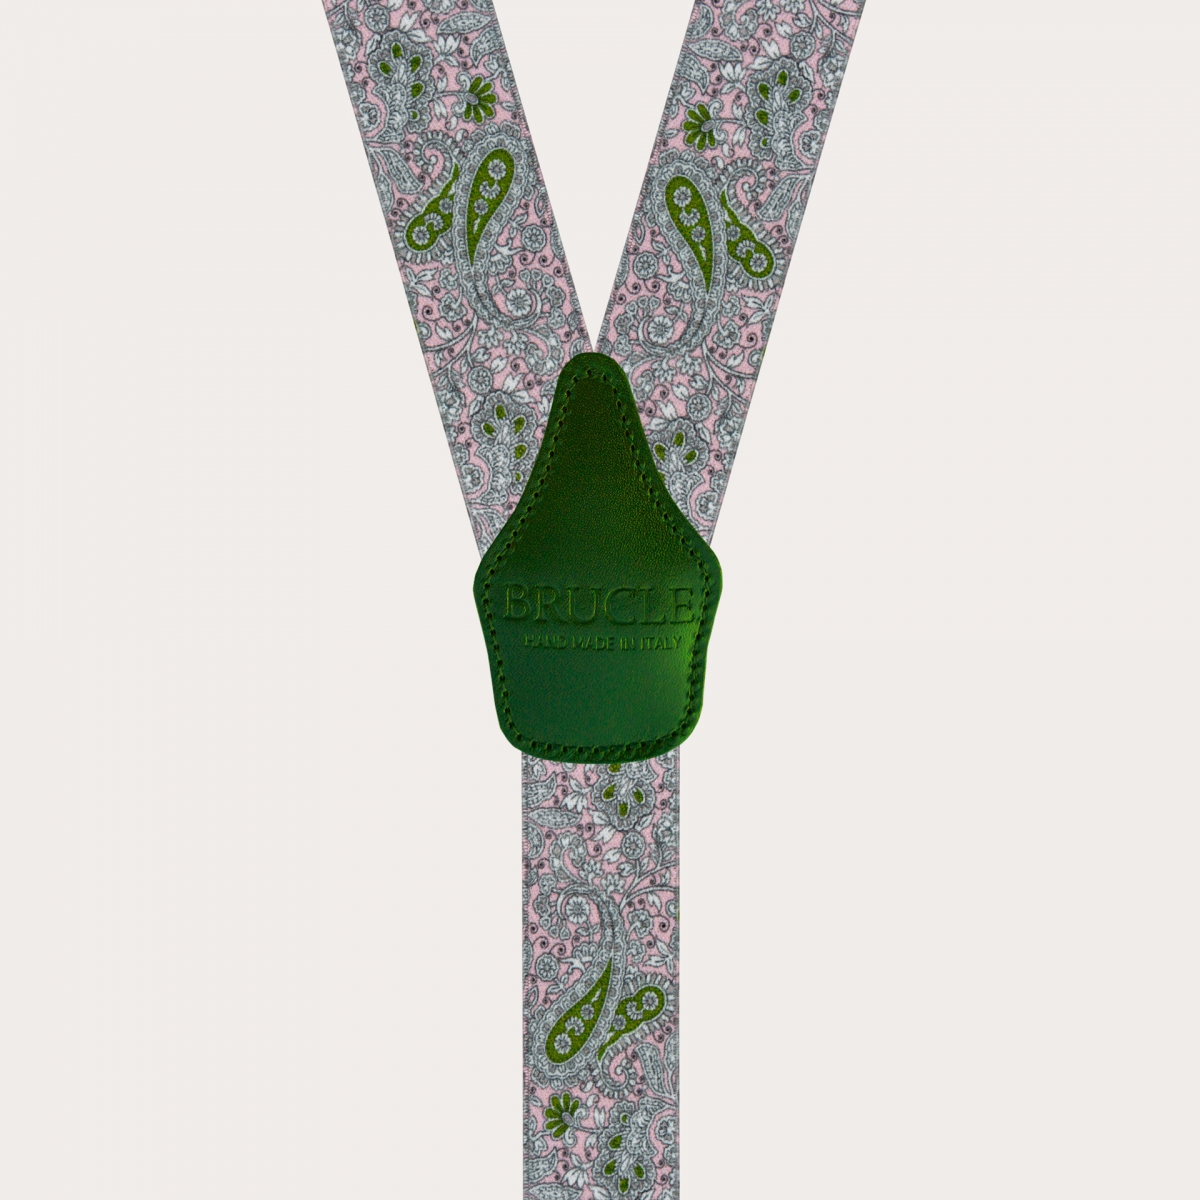 BRUCLE Bretelles élastiques en forme de Y, motif cachemire rose et vert